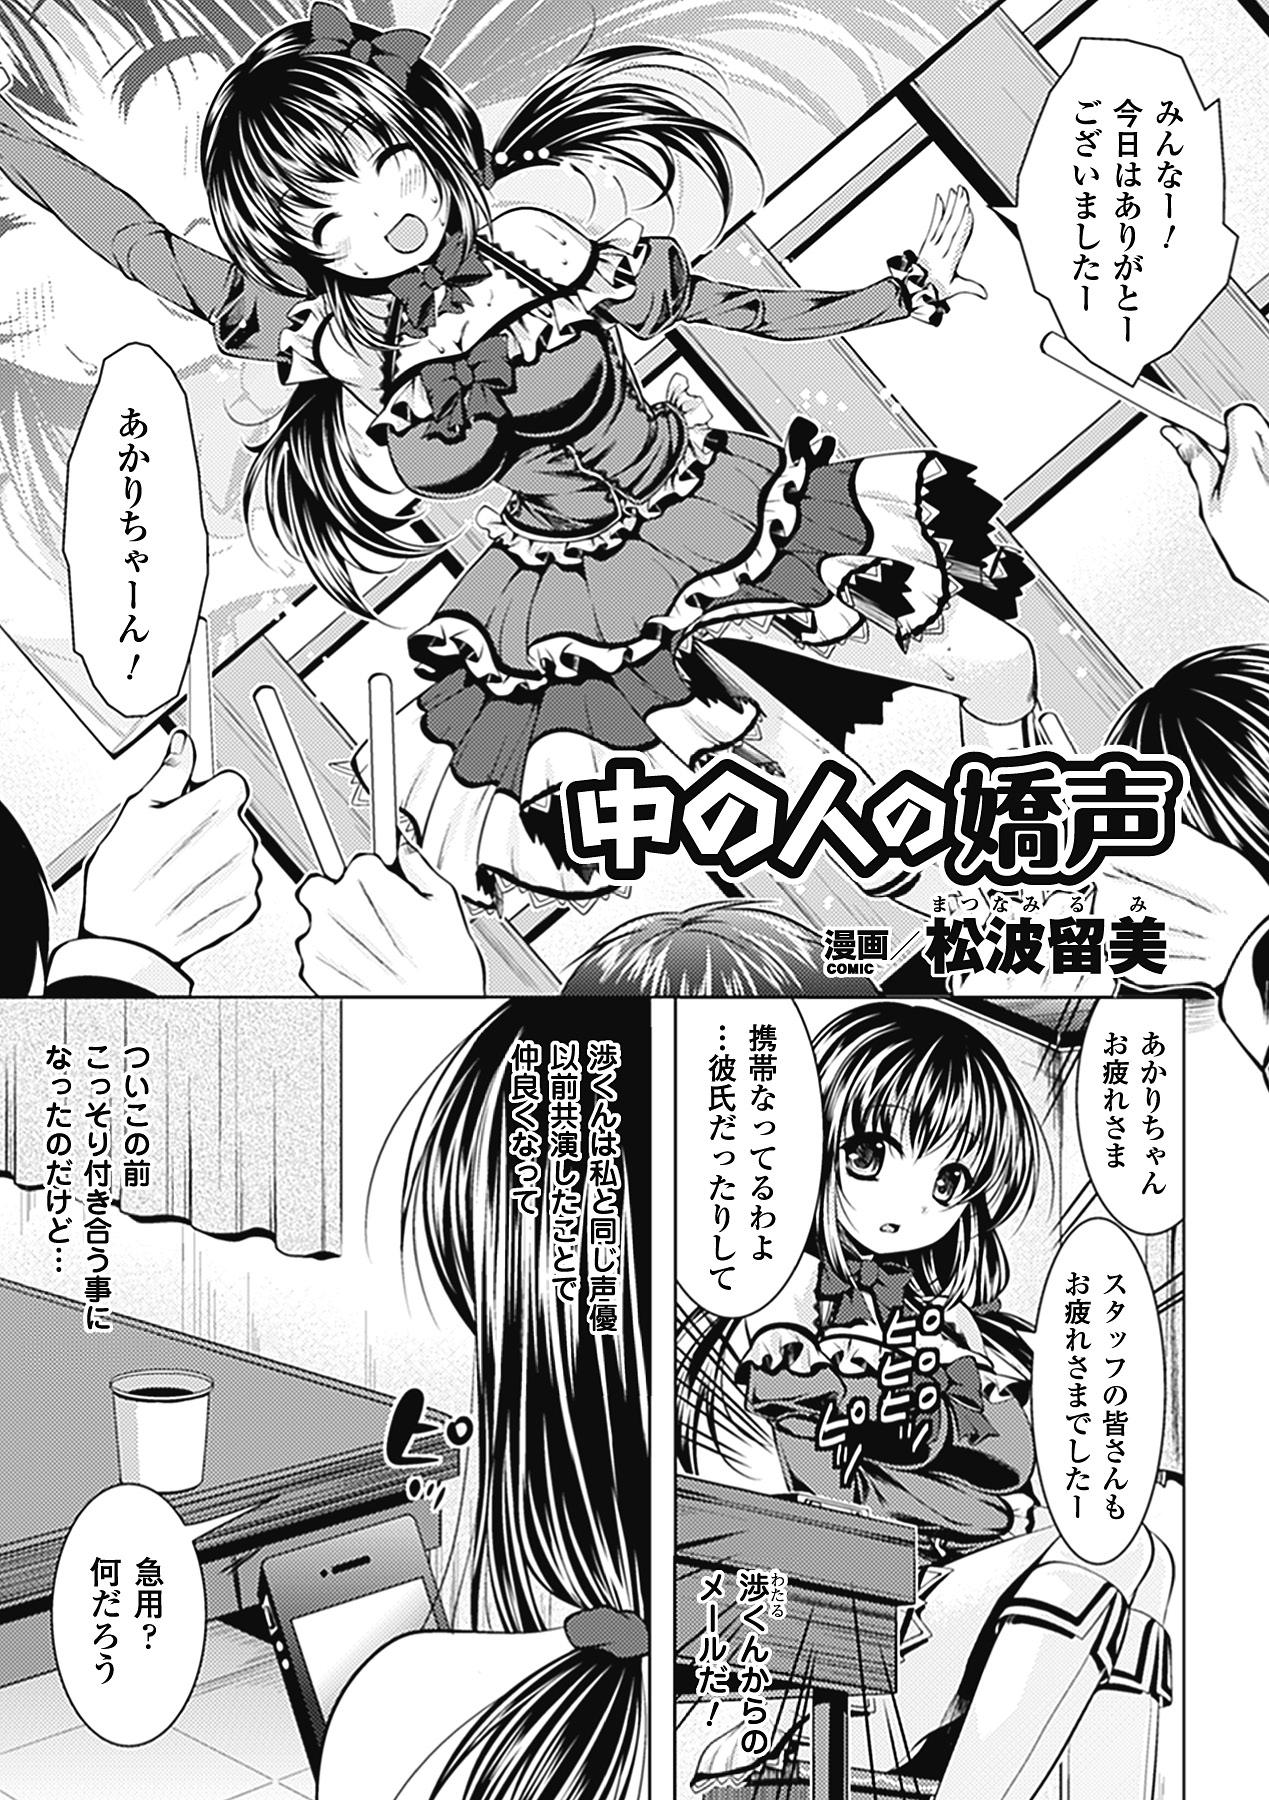 Horny Kimoman × Bishoujo Anthology Comics Vol.1 Free Fucking - Page 5